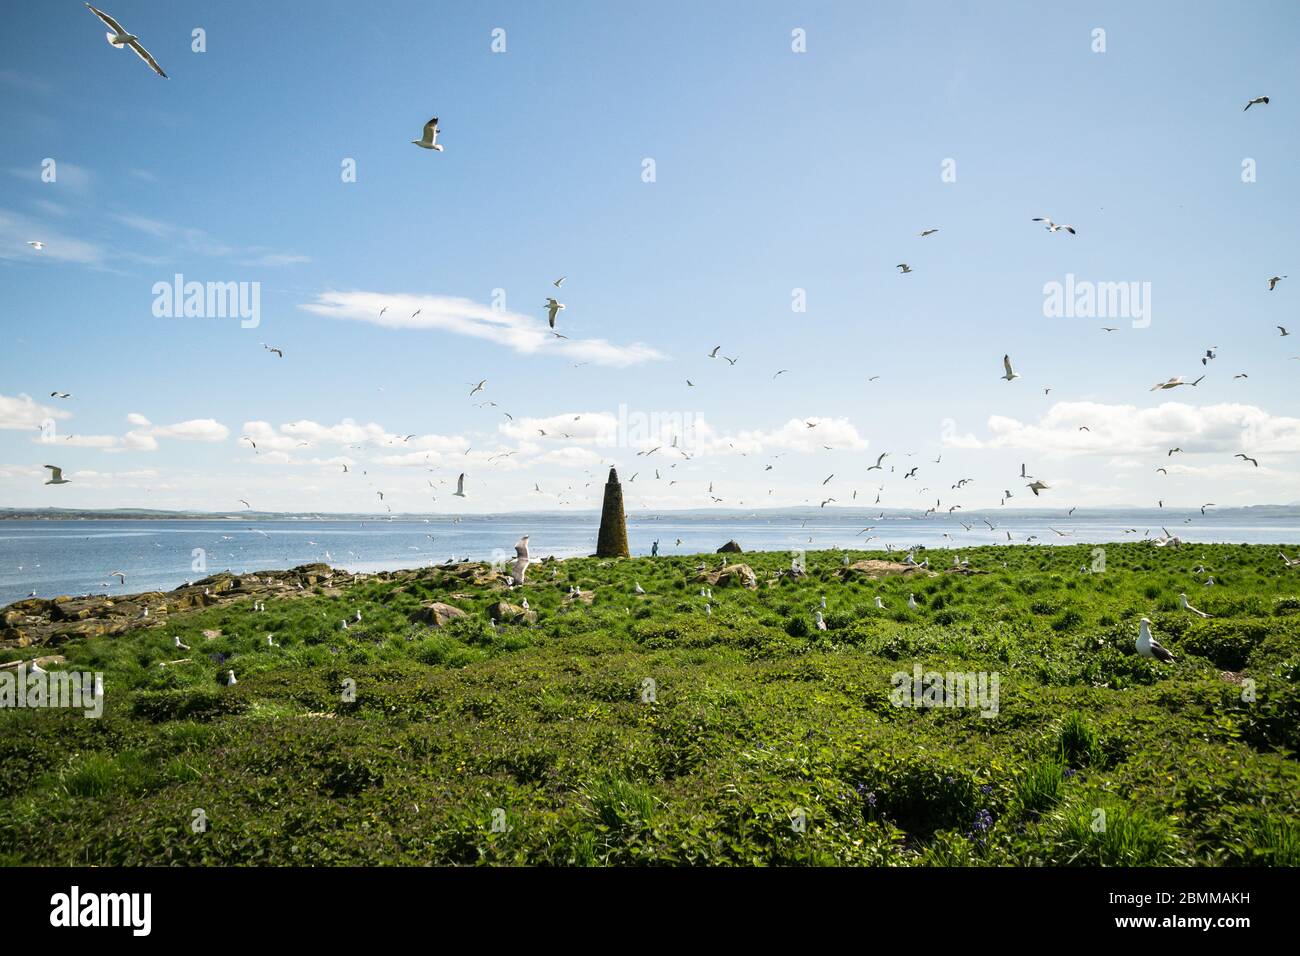 Un troupeau de goélands sur une colonie d'oiseaux de mer de l'île avec un cairn, Lady Isle, Écosse, Royaume-Uni Banque D'Images